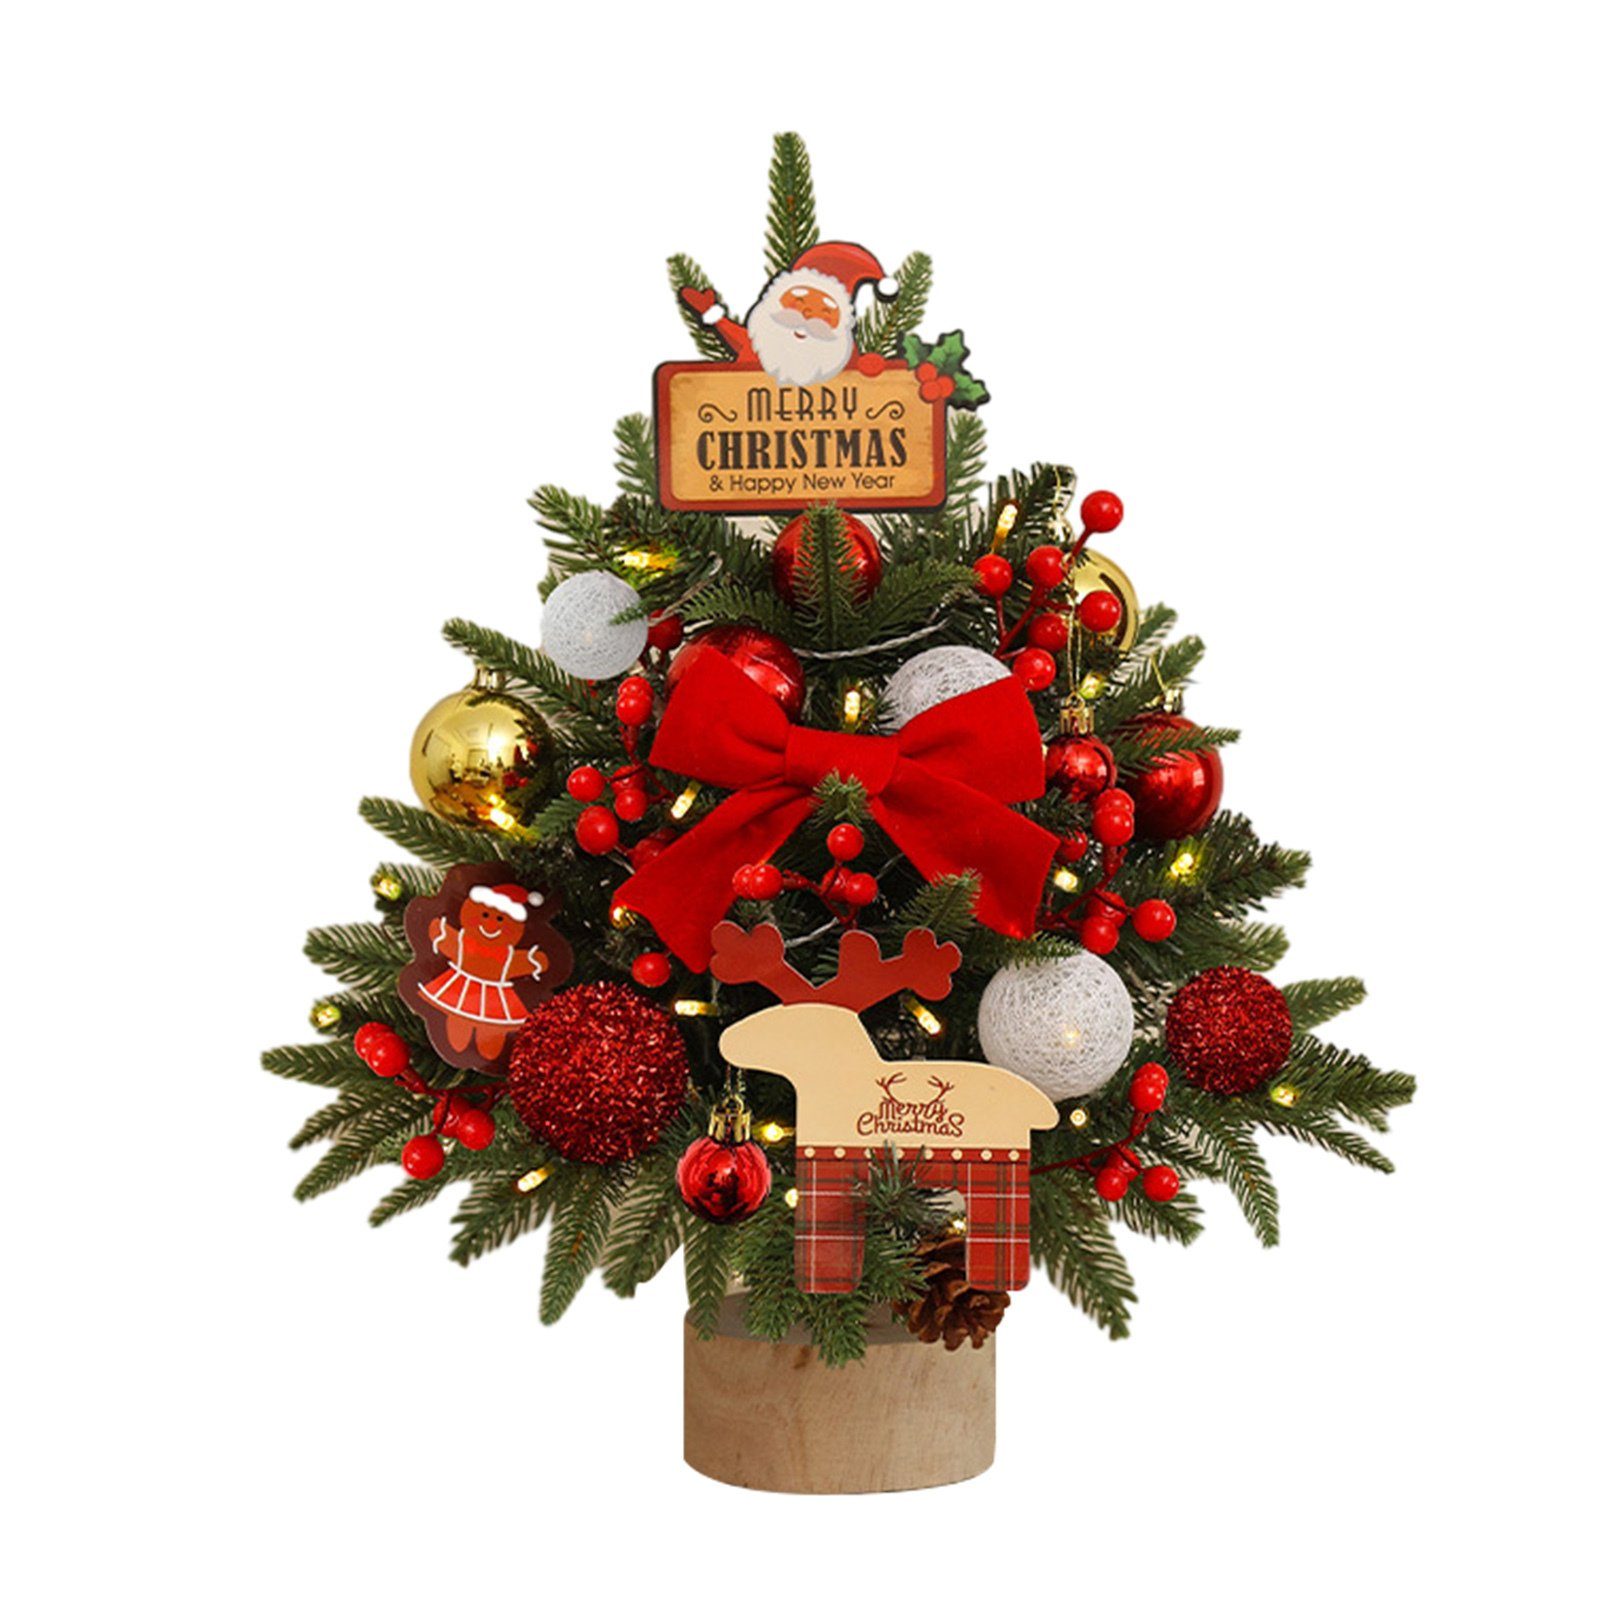 Blusmart Künstlicher Weihnachtsbaum Kleiner 45 Cm Großer Tisch-Weihnachtsbaum Mit Mehrfarbigem Dekor, Künstlicher Weihnachtsbaum cherry red | Künstliche Weihnachtsbäume